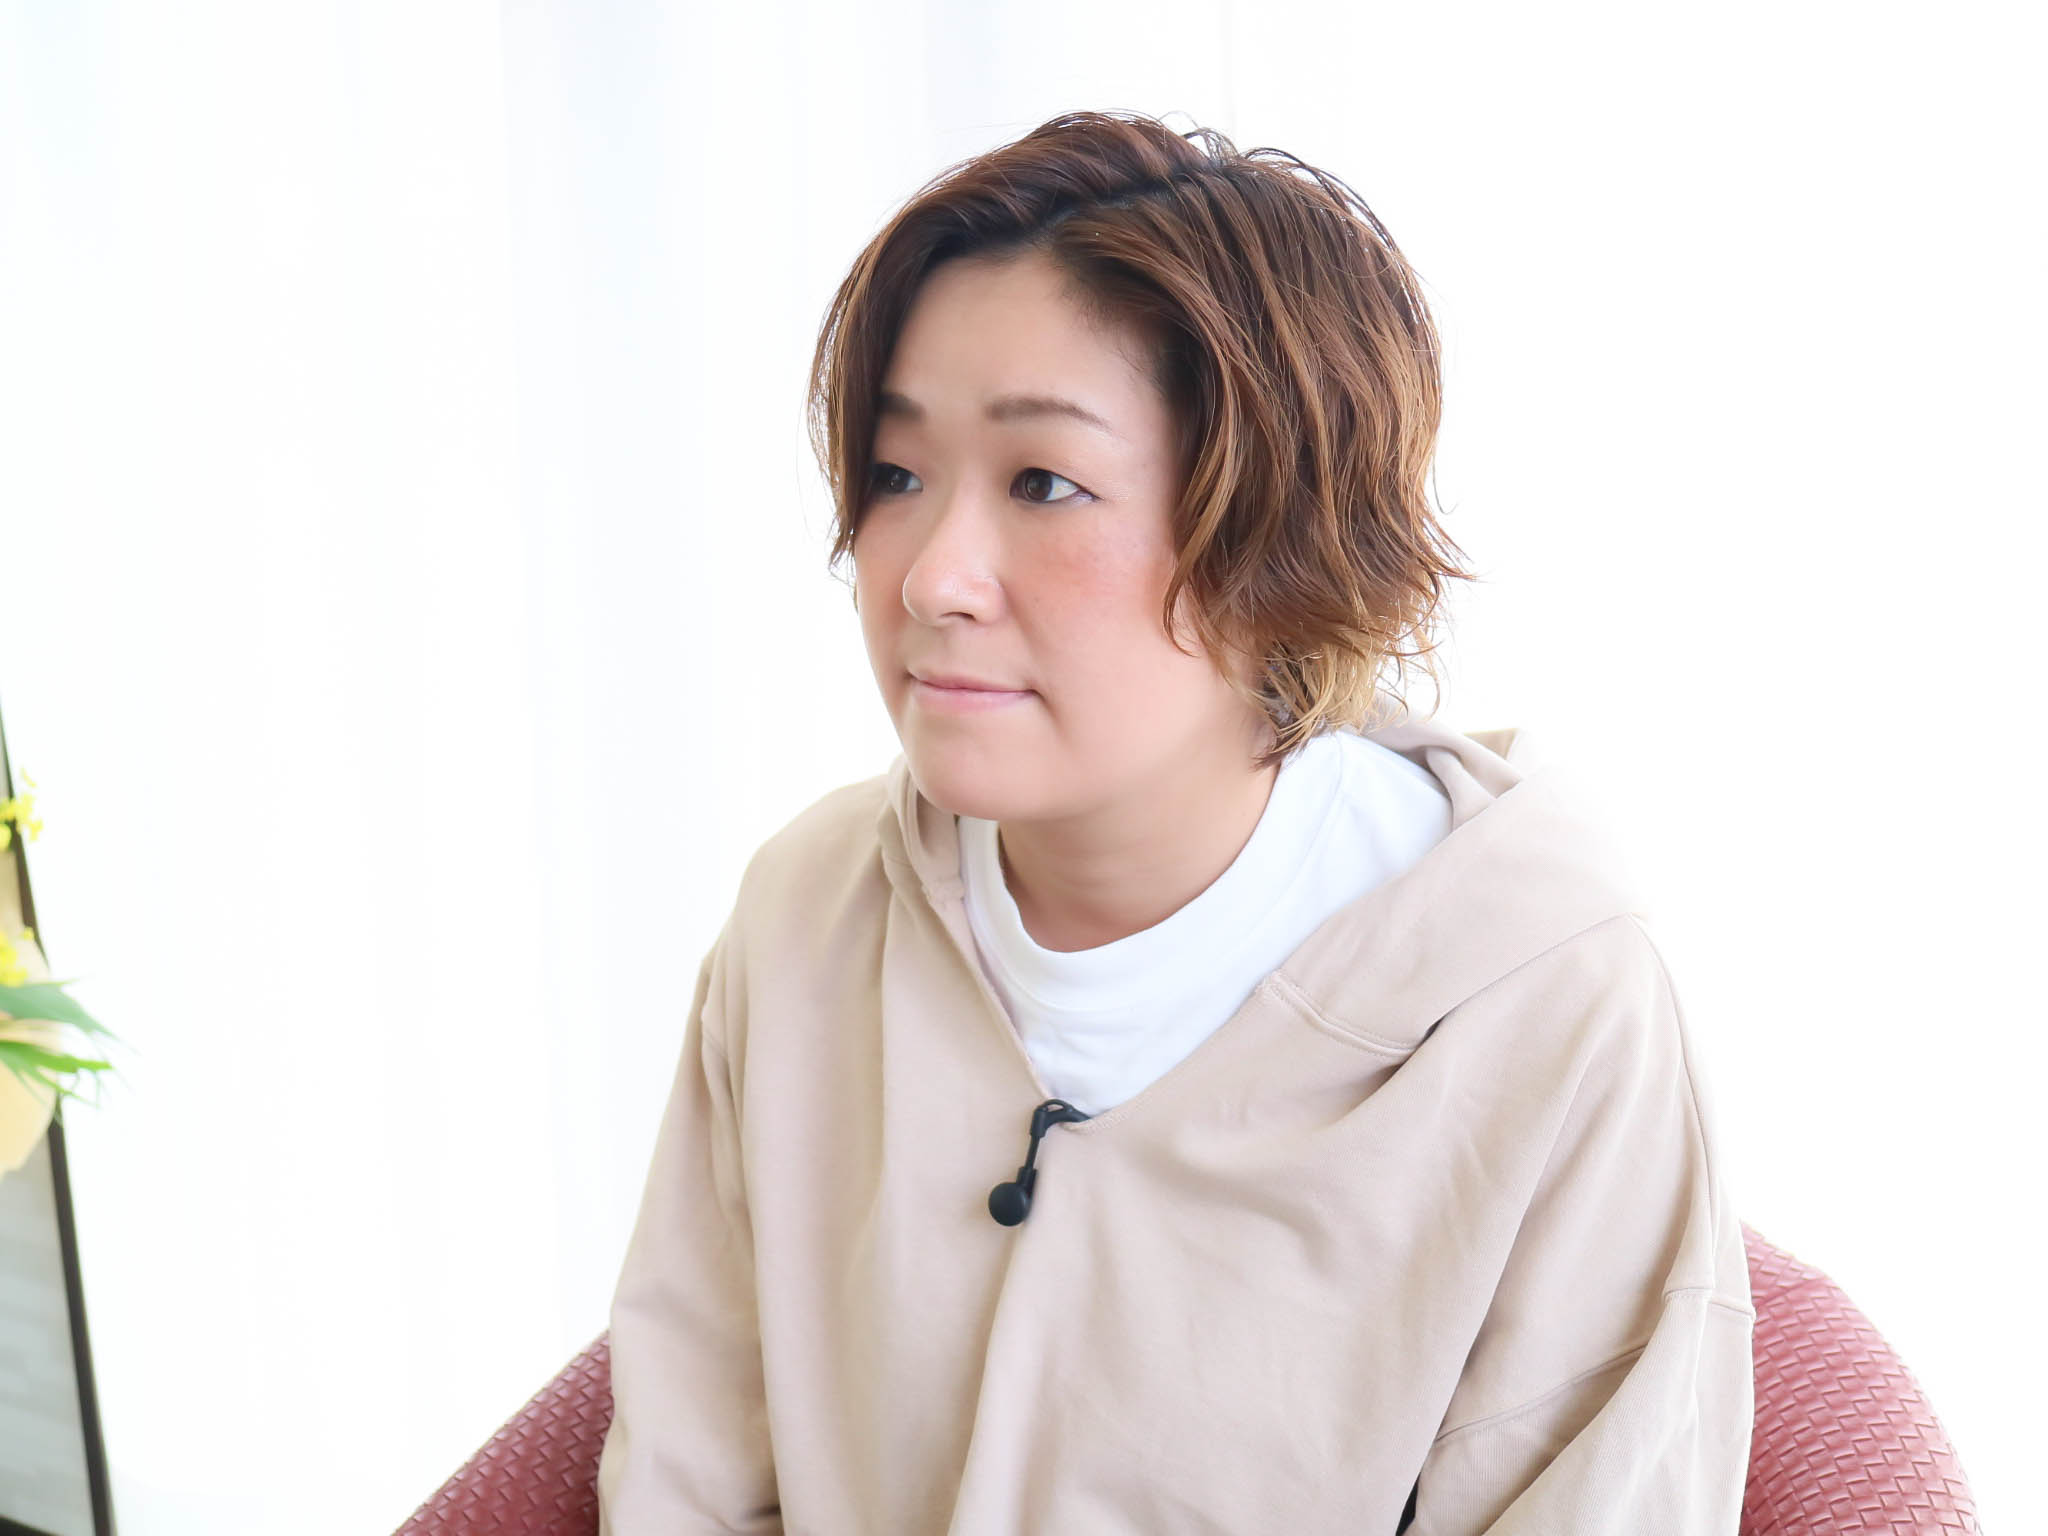 スタイリスト | 鈴木美江 | 千葉県の美容室Wiz 美容師の求人・募集公式サイト